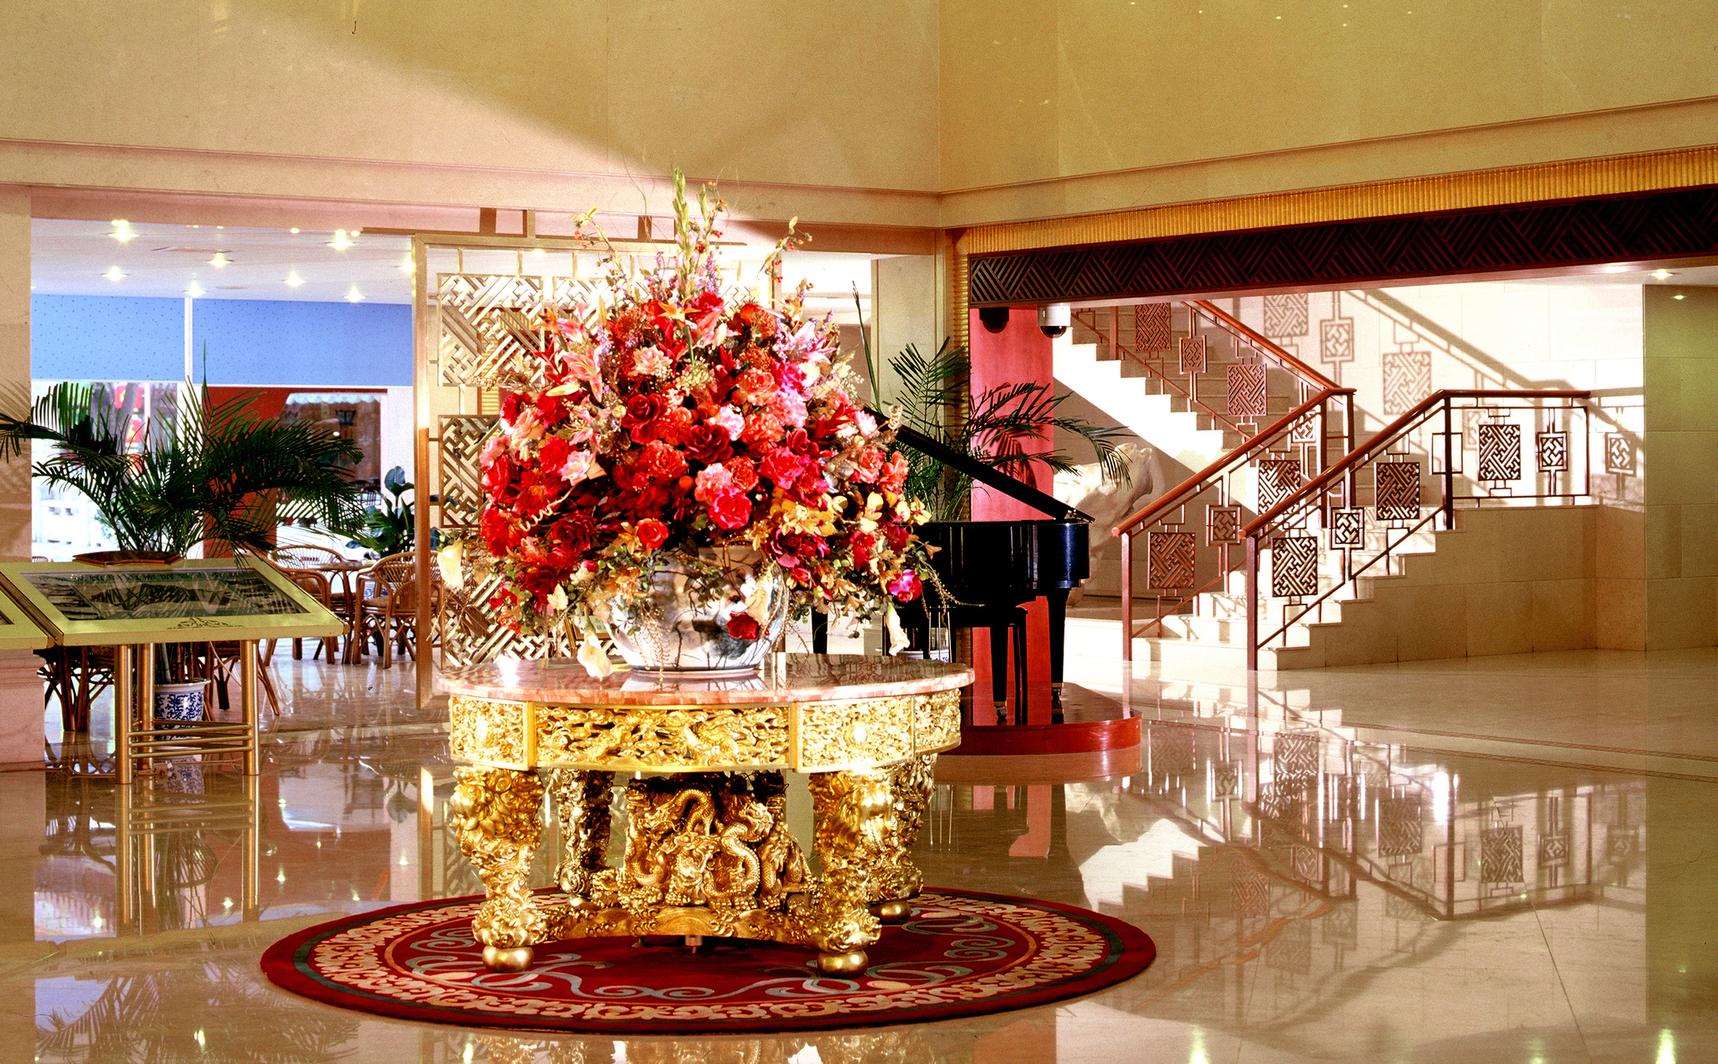 【携程攻略】鄢陵金雨玫瑰温泉度假区景点,金雨玫瑰庄园酒店店如其名，以玫瑰为主题，打造玫瑰特色主题的理念。…